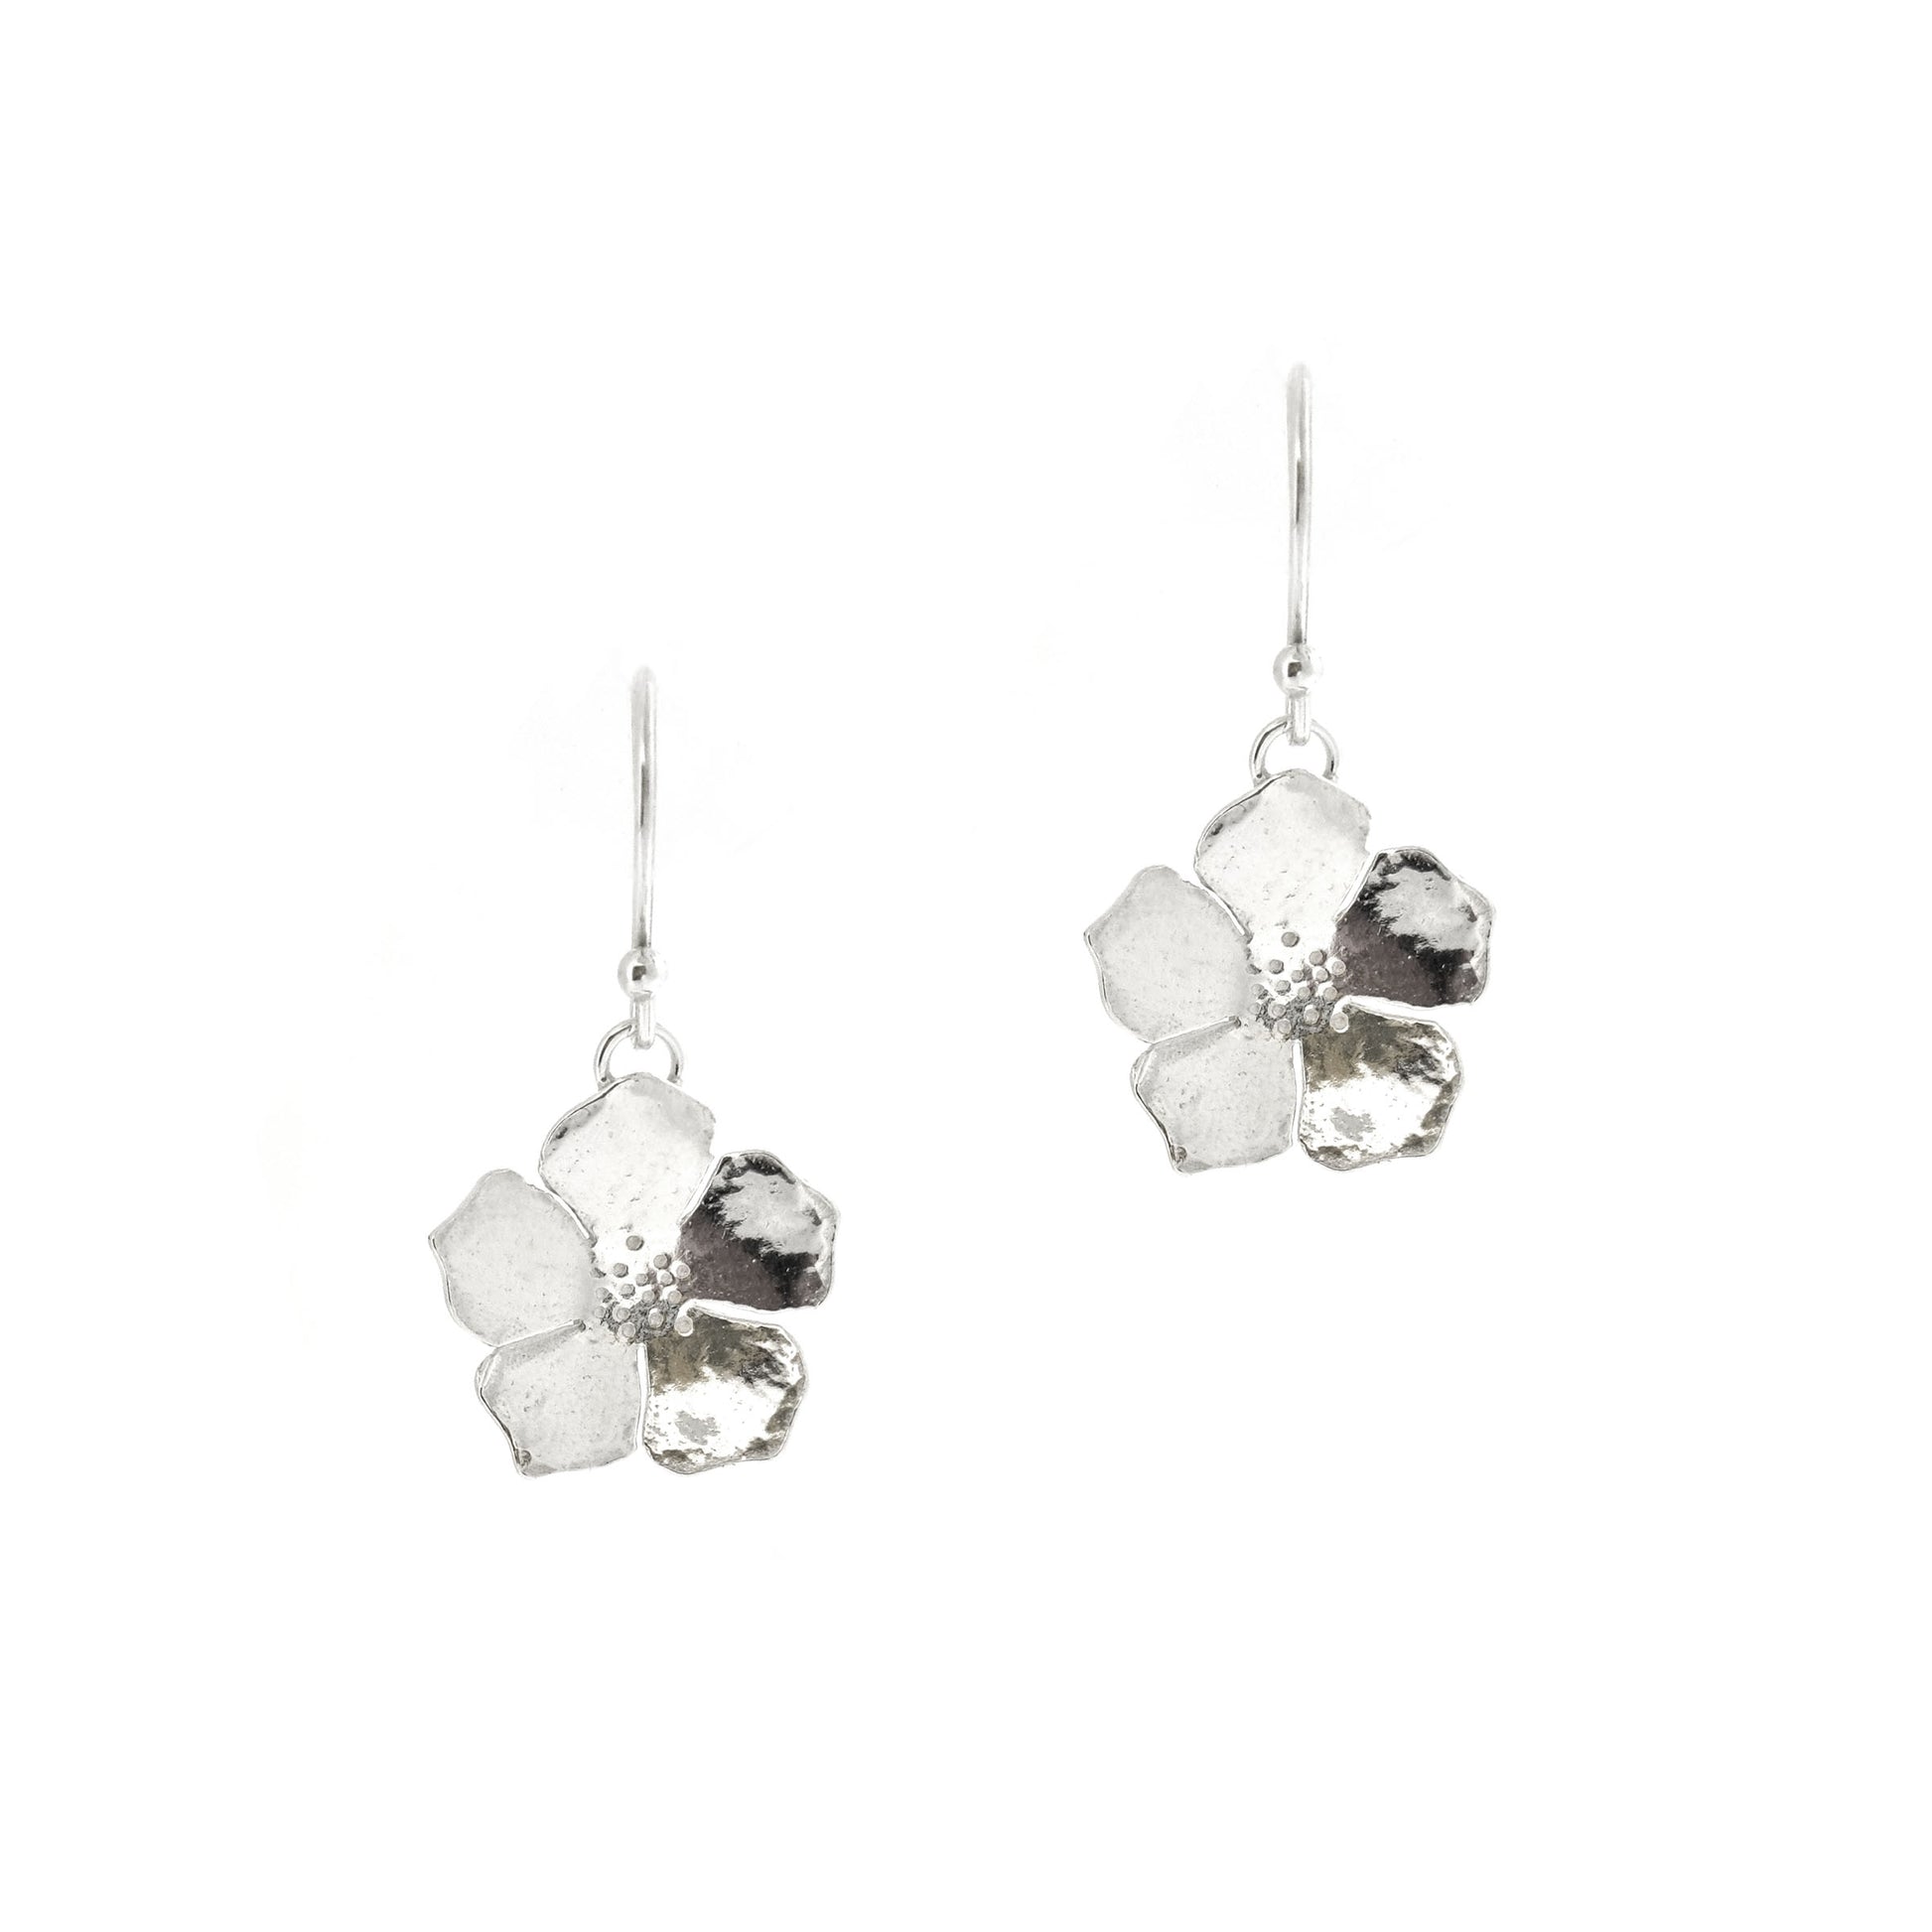 Silver five petal flower drop earrings